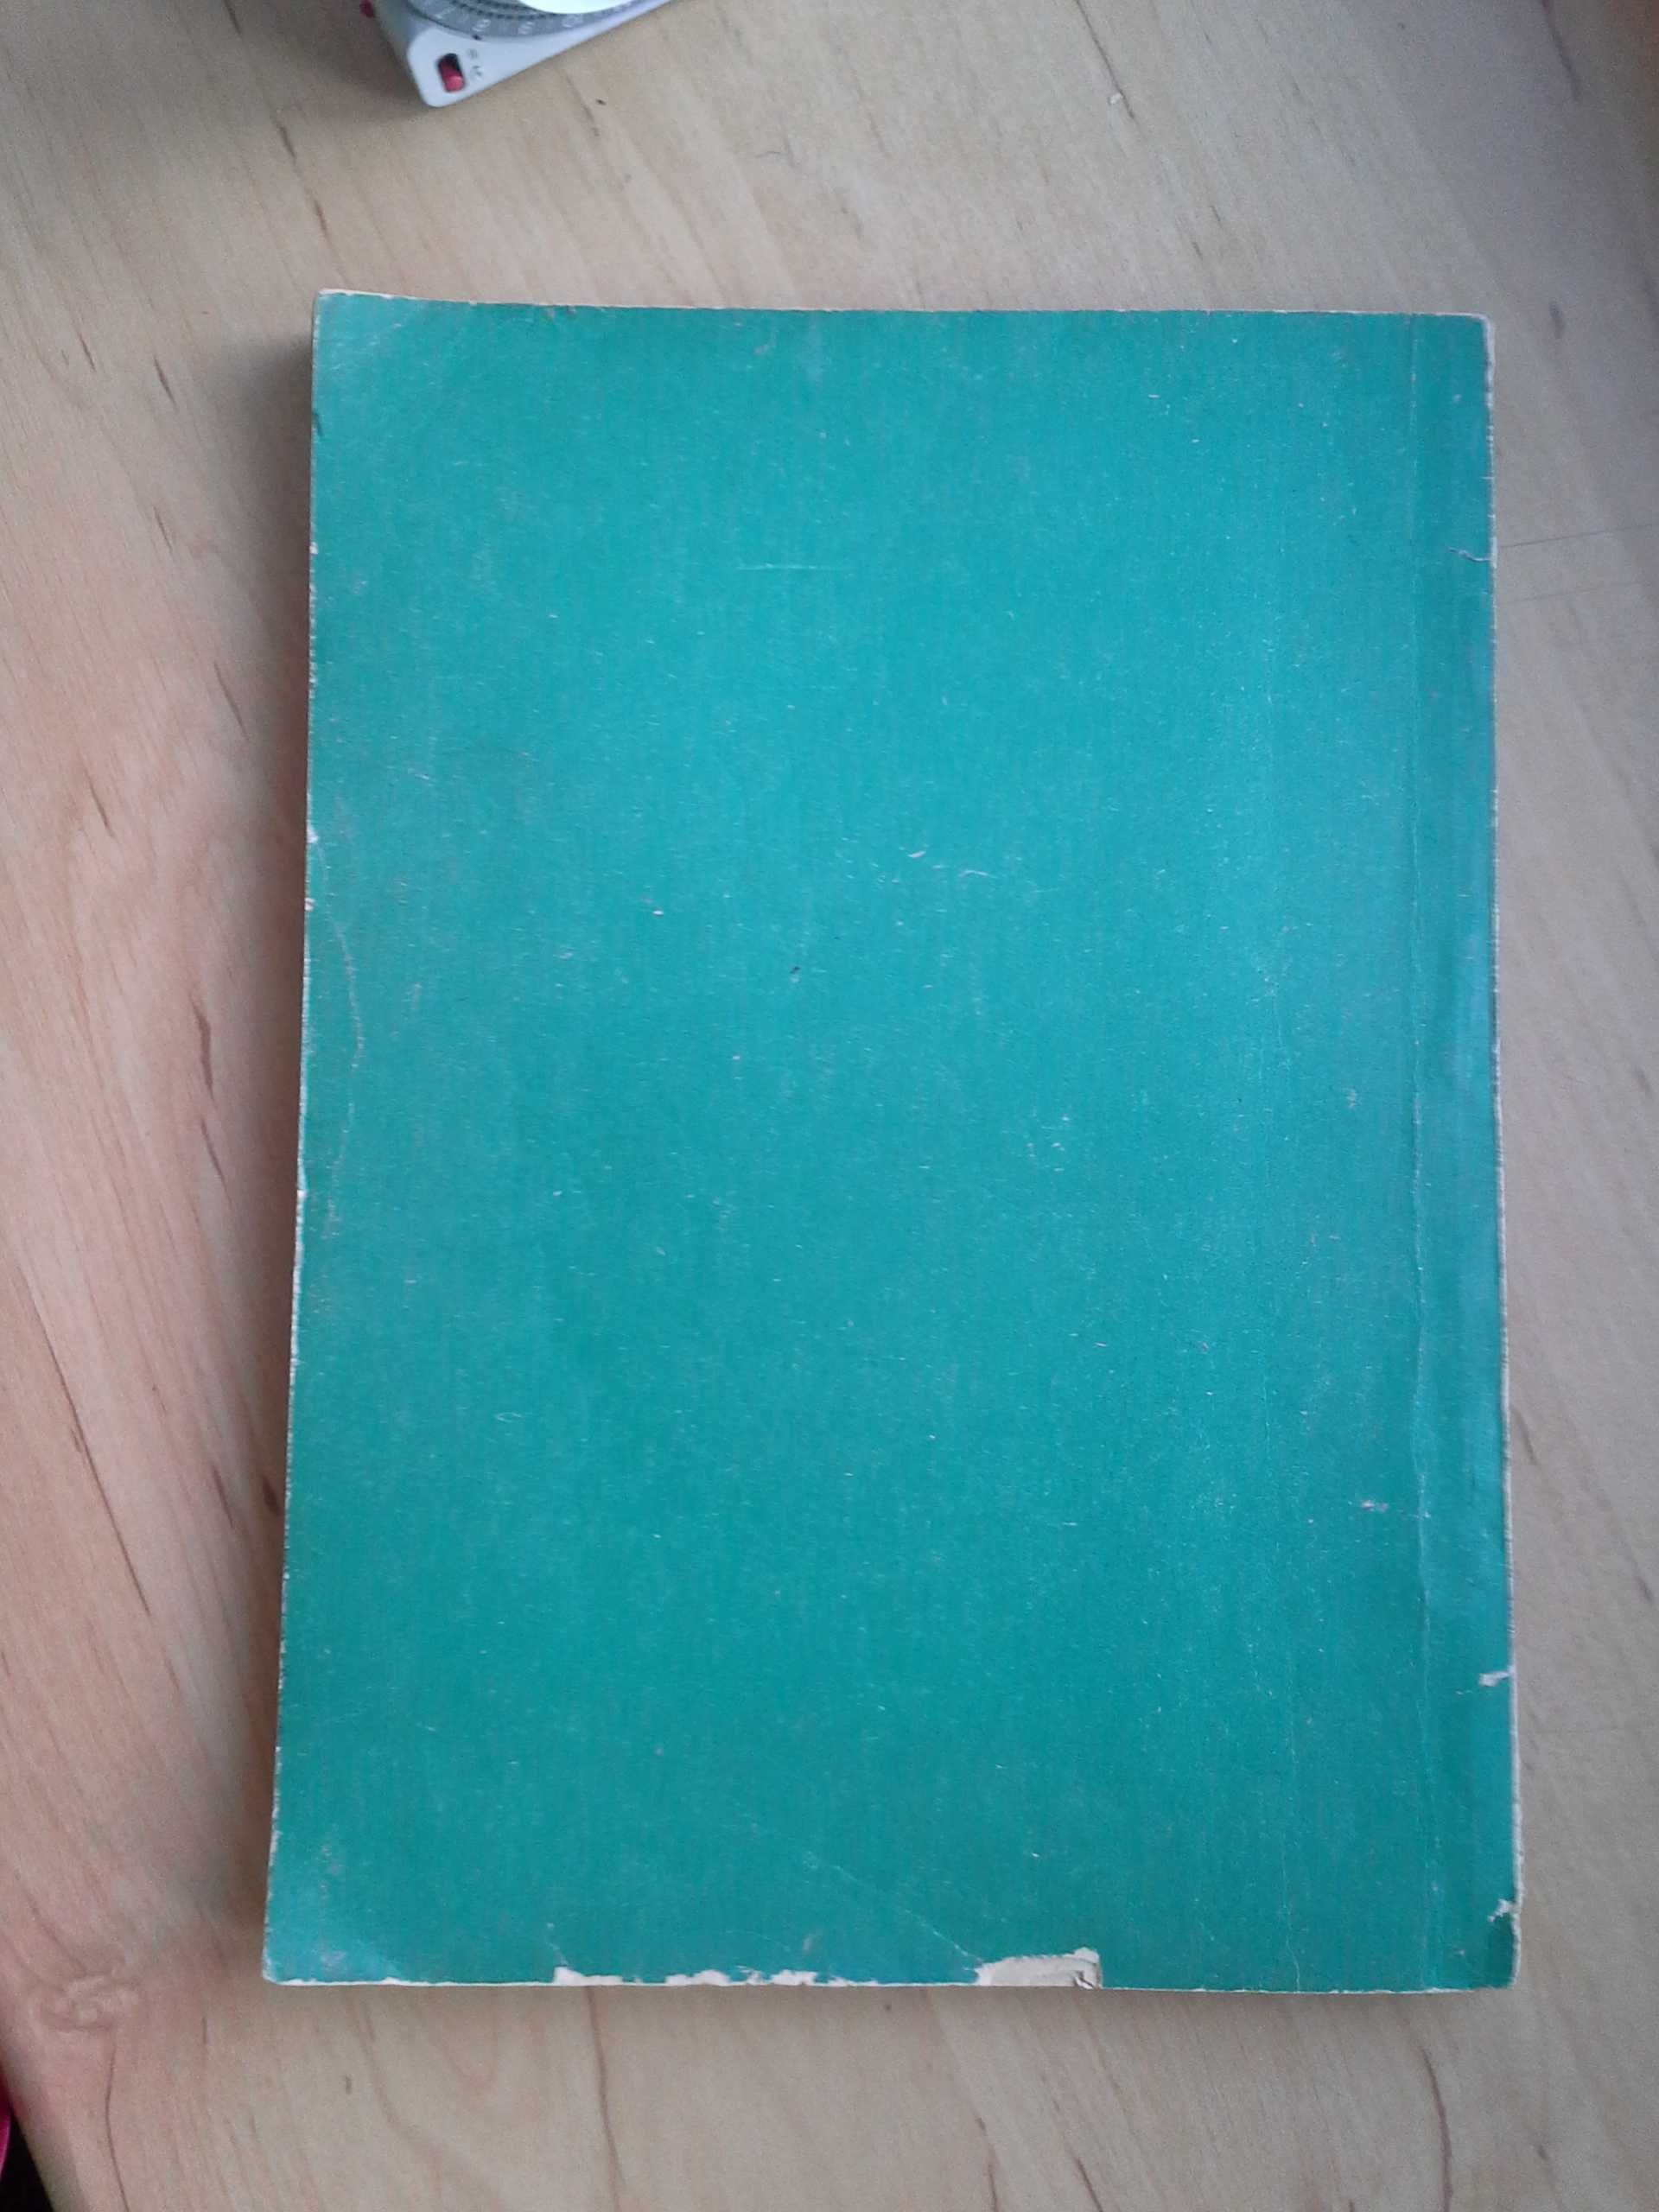 Uprawa Roślin Zielarskich, H. Janicka, wydanie pierwsze, 1957r.